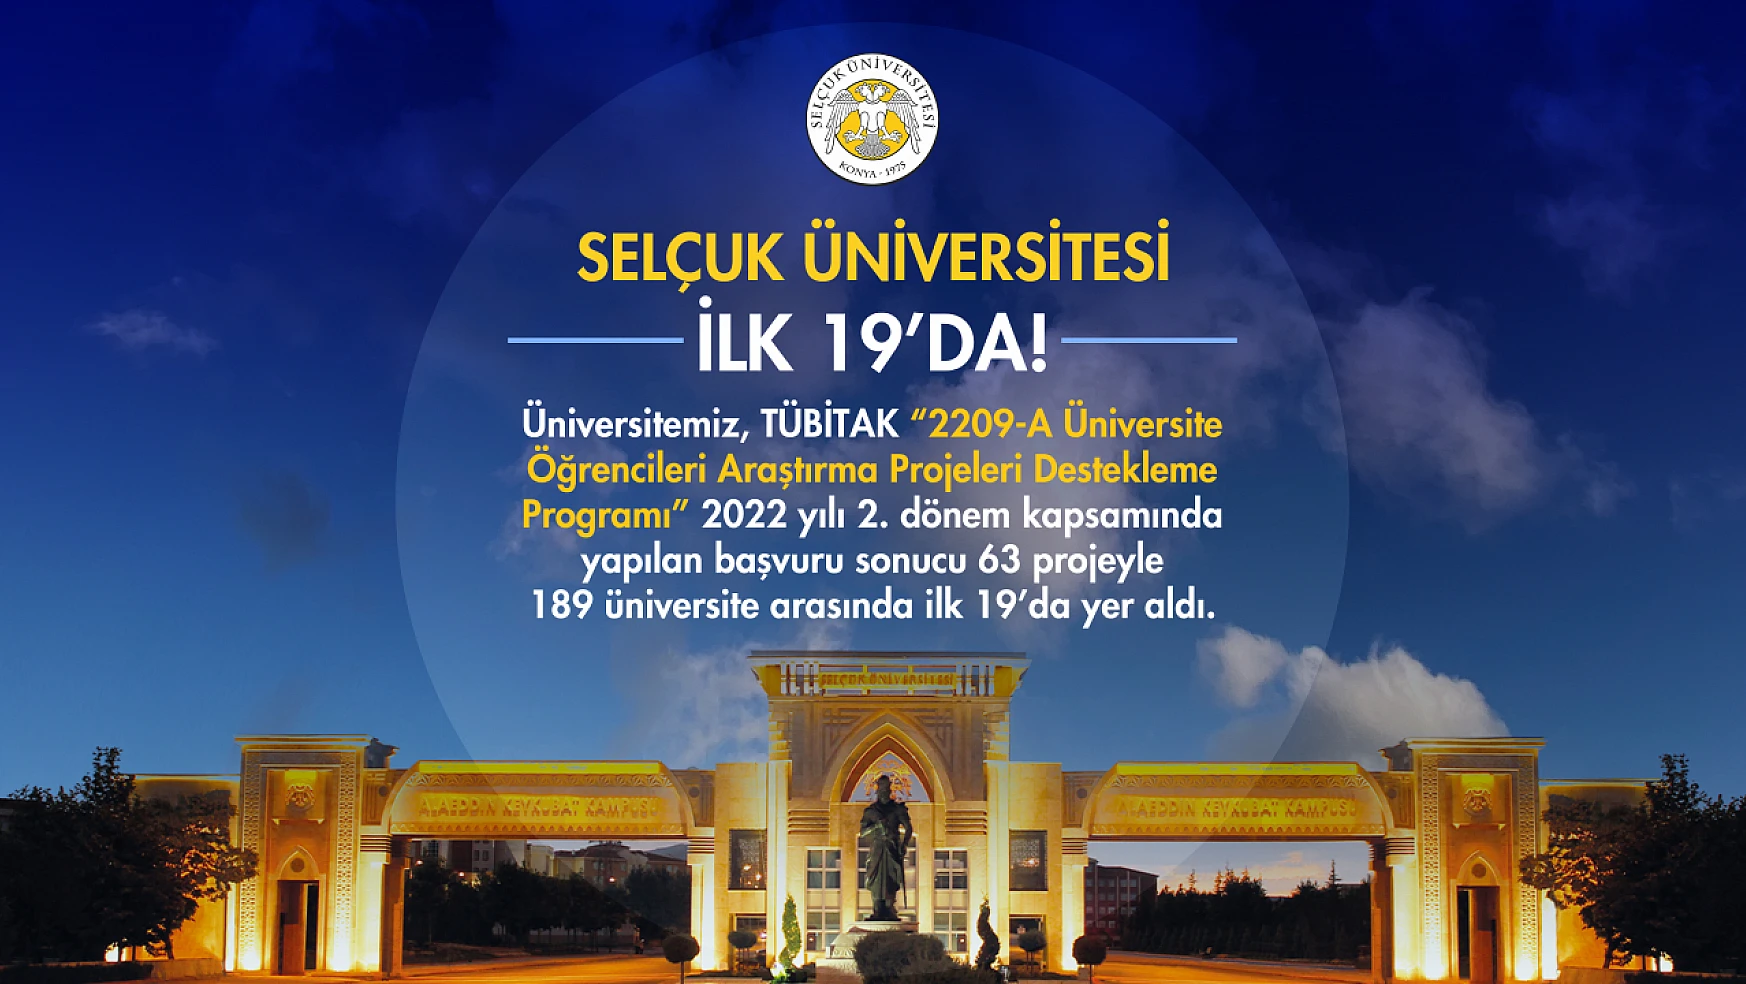 Selçuk Üniversitesi, TÜBİTAK projeleriyle Türkiye'de ilk 19'da yer aldı